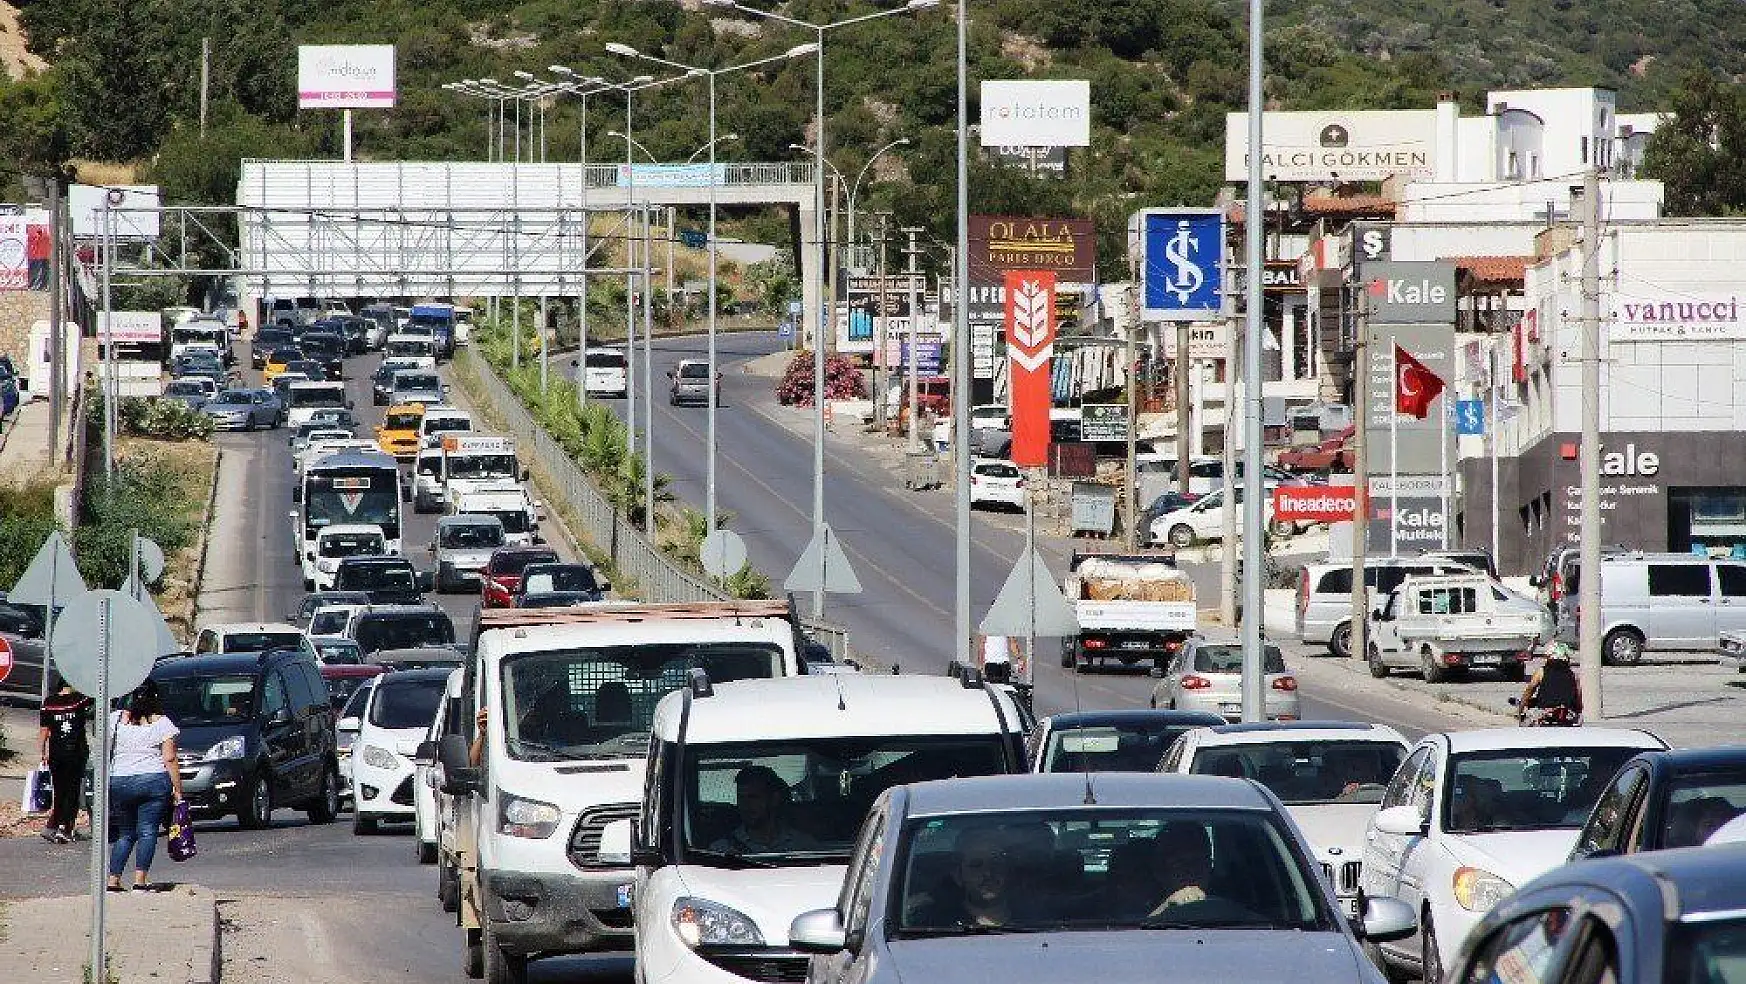 170 bin nüfuslu Bodrum'a bayramda 150 bin araç giriş yaptı